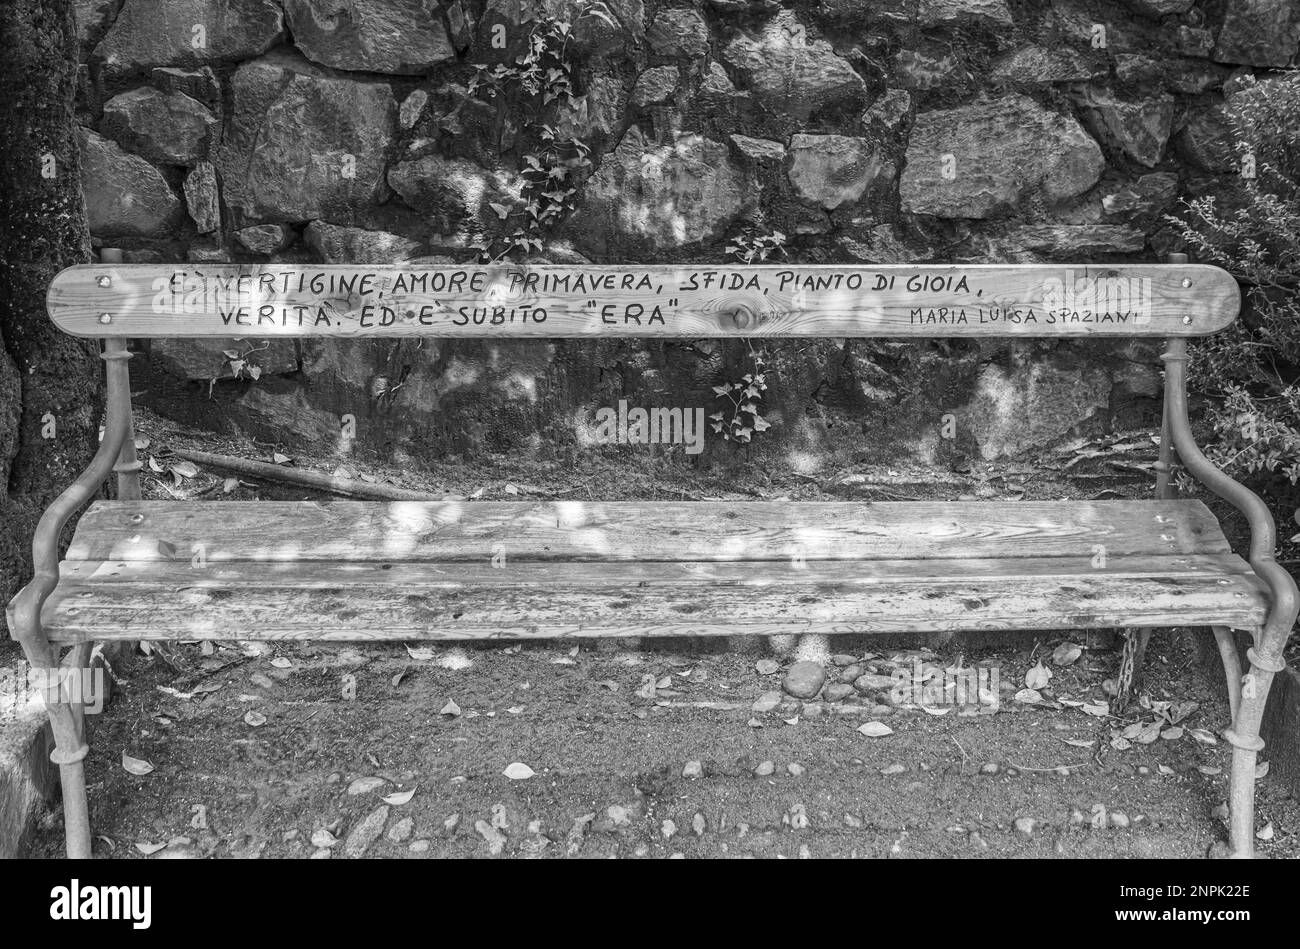 Caratteristica panca lignea sul lungomare di Merano - Tappeinerweg. Merano in Alto Adige, provincia di Bolzano, Trentino Alto Adige, Italia Foto Stock